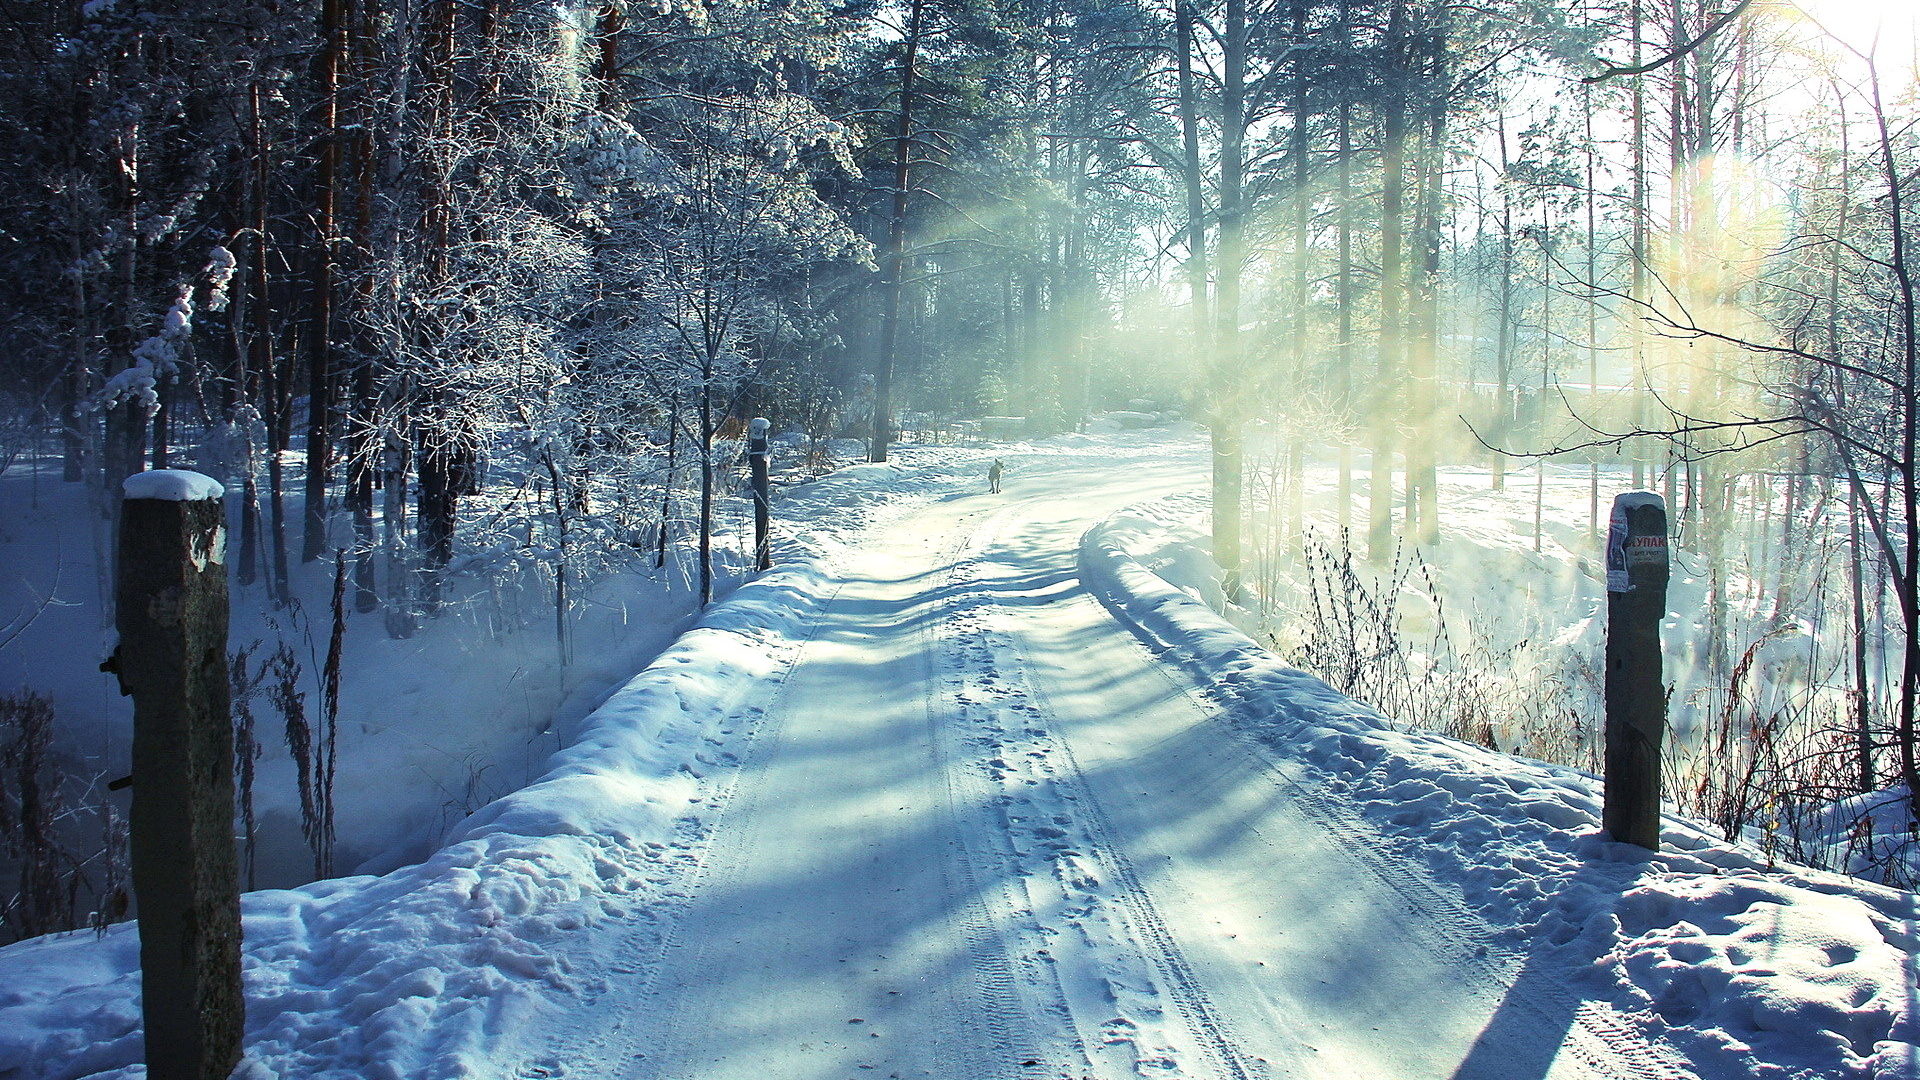 冬天来了！白雪皑皑大自然雪景桌面壁纸